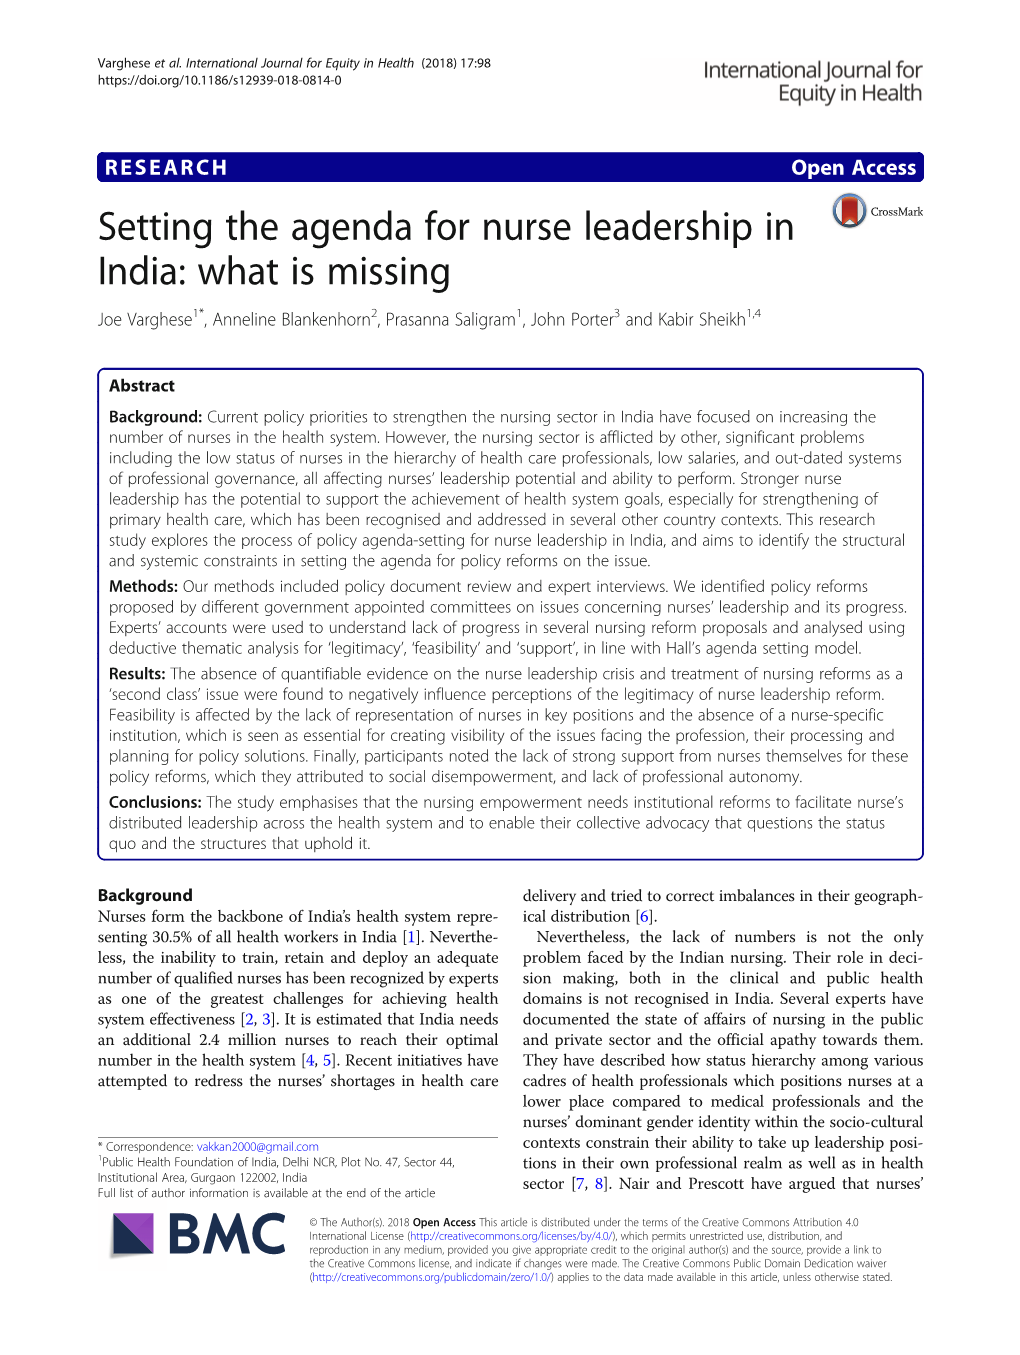 Setting the Agenda for Nurse Leadership in India: What Is Missing Joe Varghese1*, Anneline Blankenhorn2, Prasanna Saligram1, John Porter3 and Kabir Sheikh1,4